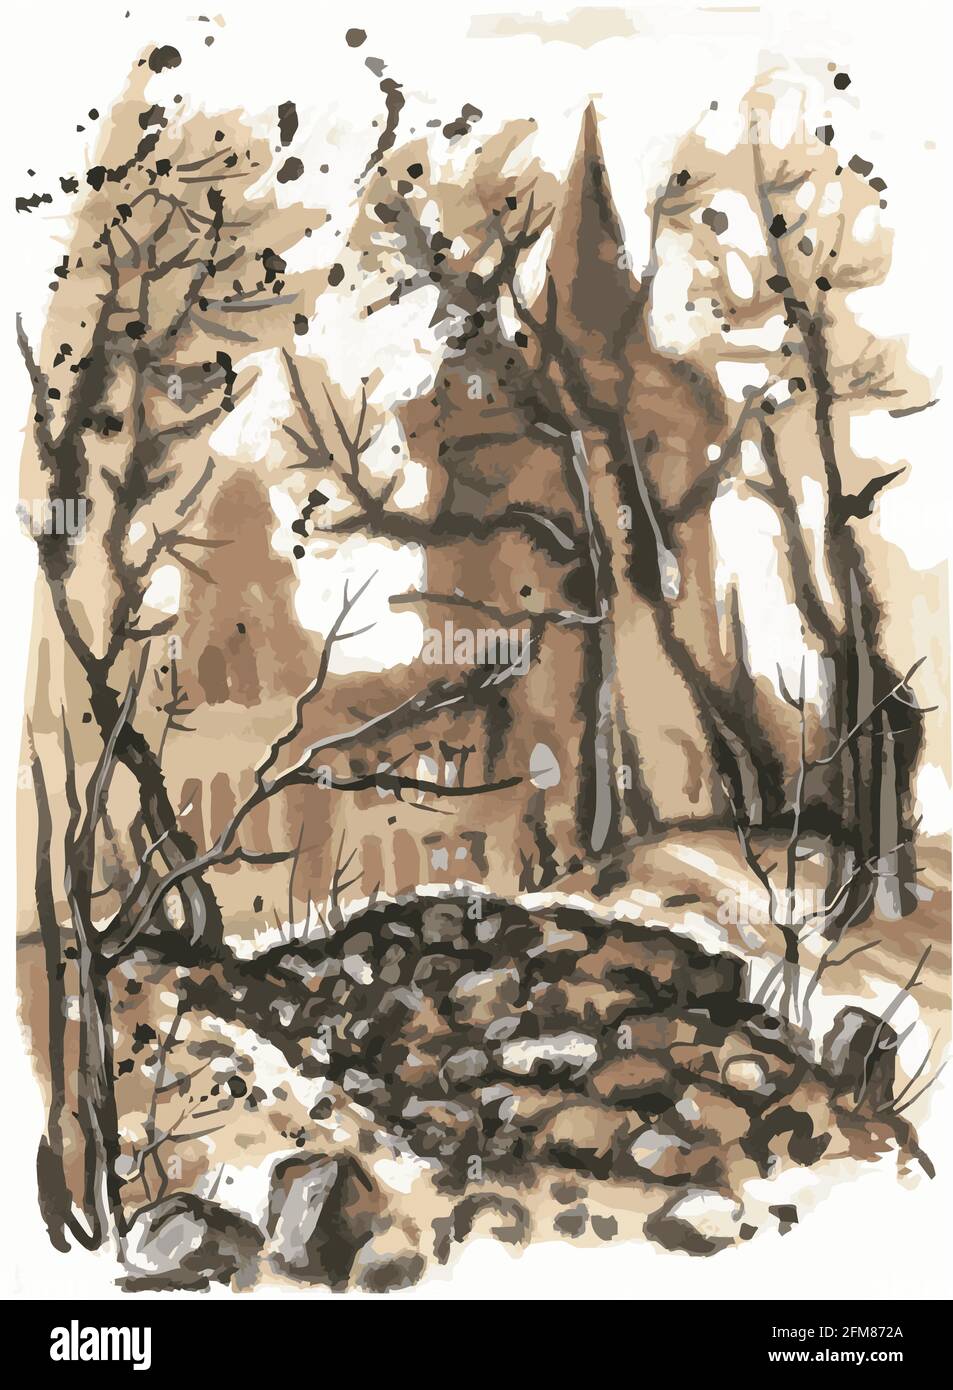 Die Umrisse des alten Schlosses leuchten durch die Bäume. Ein Steinhaufen im Vordergrund. Skizze. Monochrom. Sepia. Stock Vektor